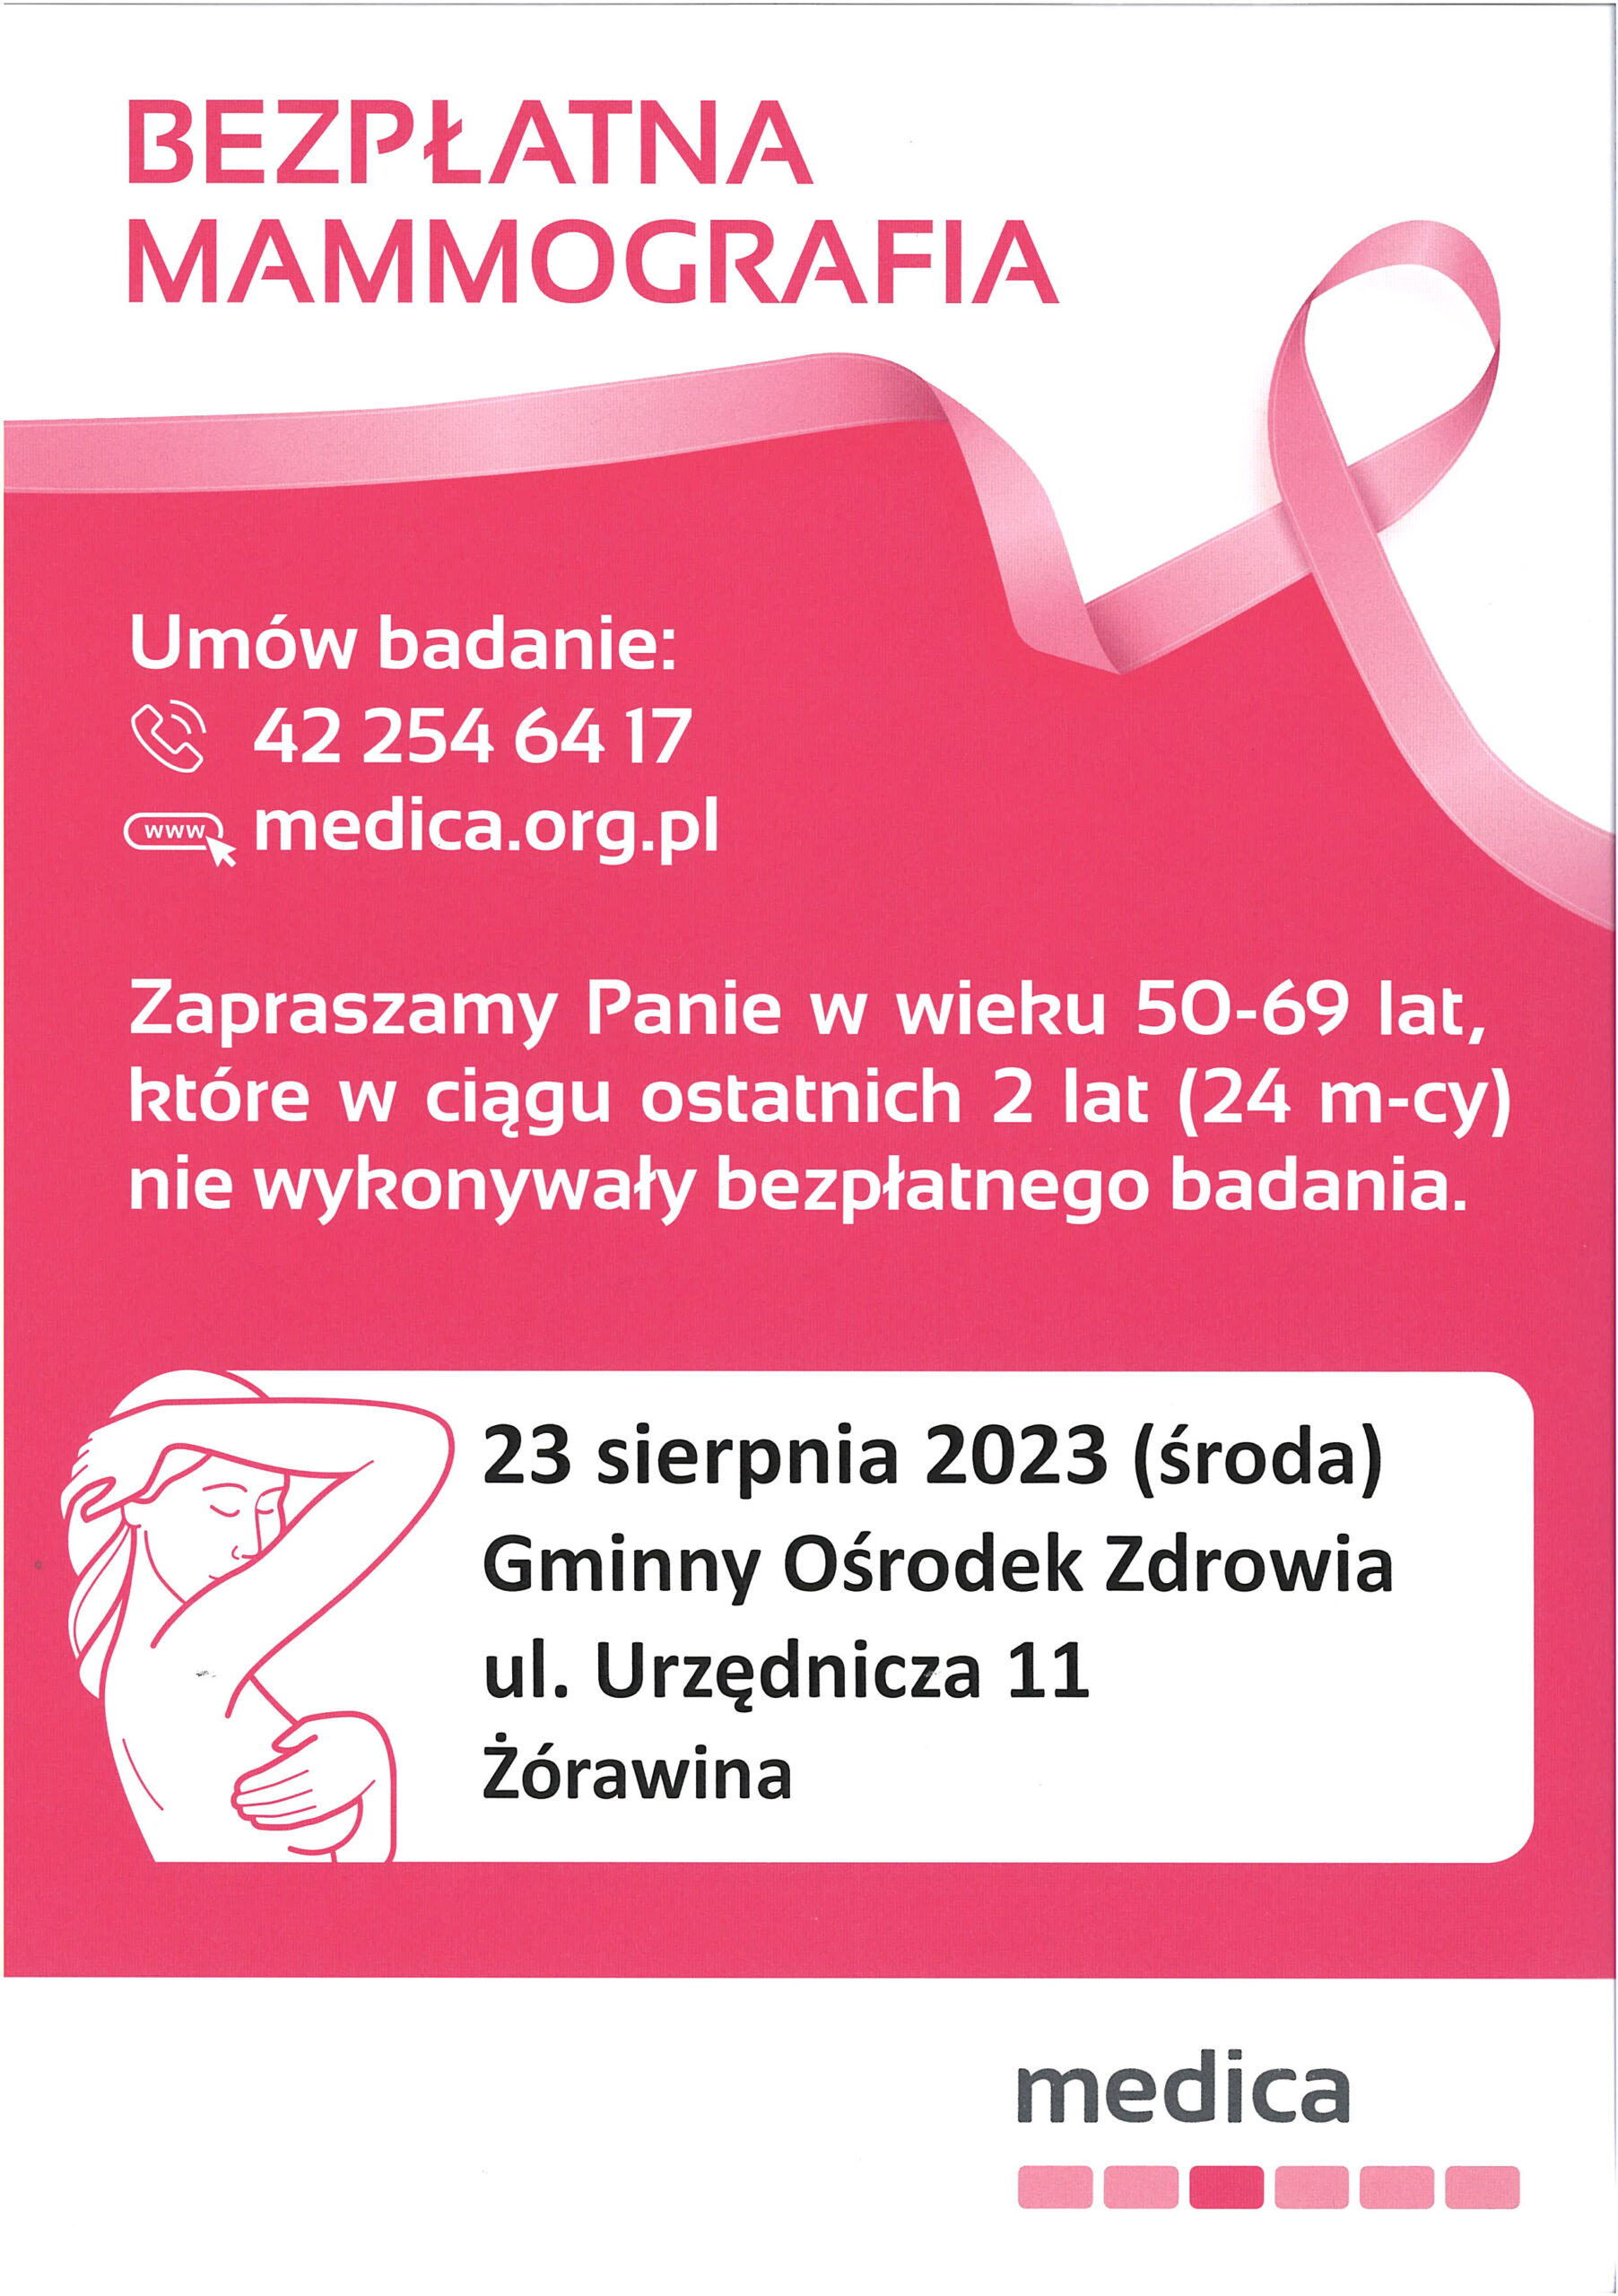 Bezpłatna mammografia w sierpniu (23.08.2023)